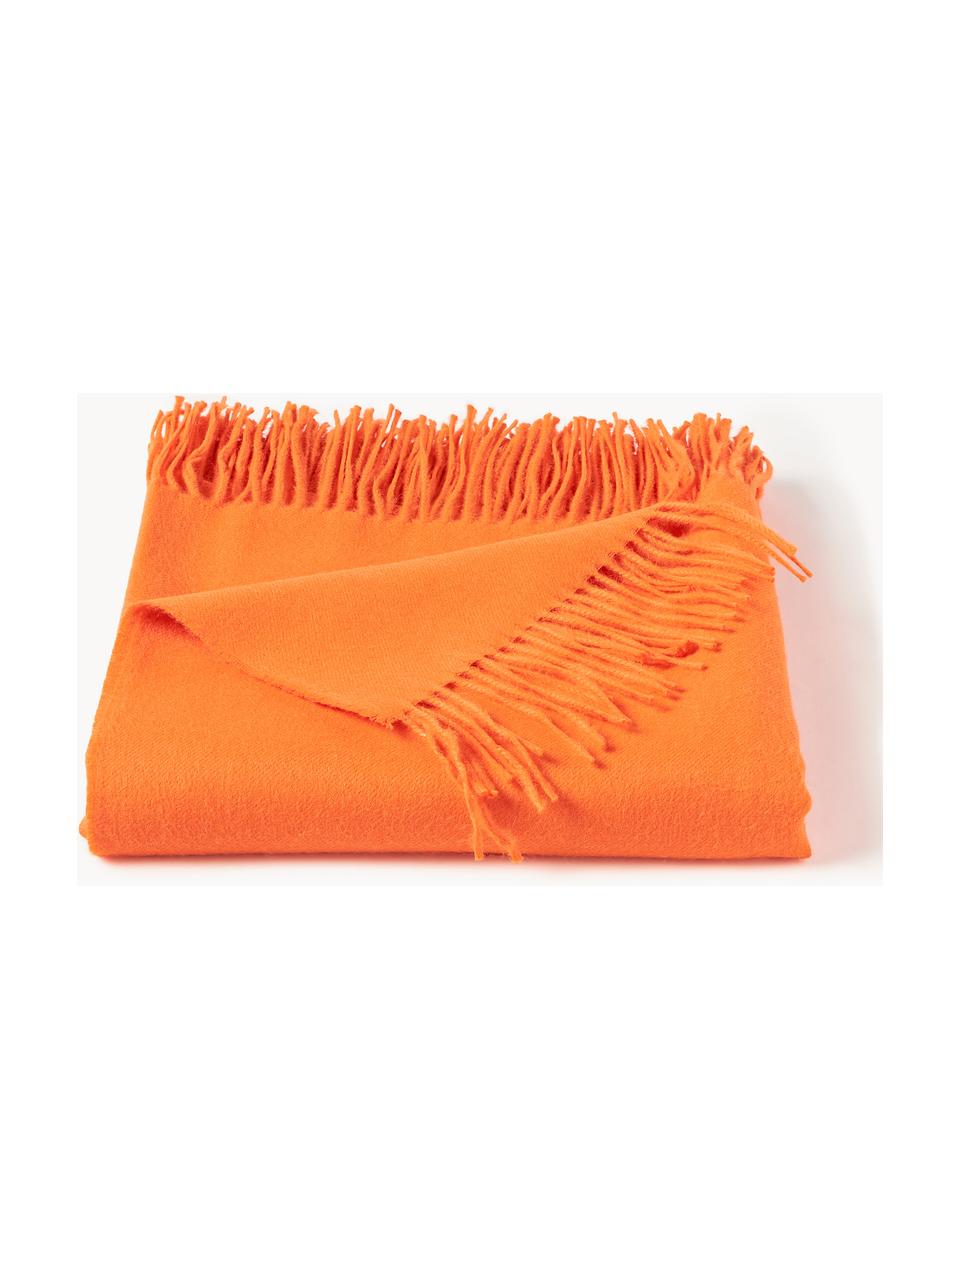 Plaid Luxury aus Babyalpaka-Wolle, 100 % Baby-Alpakawolle

Diese Decke ist aus wunderbar weicher, hochwertiger Babyalpaka-Wolle gewebt. Sie schmeichelt der Haut und spendet wohlige Wärme, ist strapazierfähig aber dennoch leicht und besitzt hervorragende temperaturregulierende Eigenschaften. Dadurch ist diese Decke der perfekte Begleiter für kühle Sommerabende ebenso wie kalte Wintertage., Orange, B 130 x L 200 cm